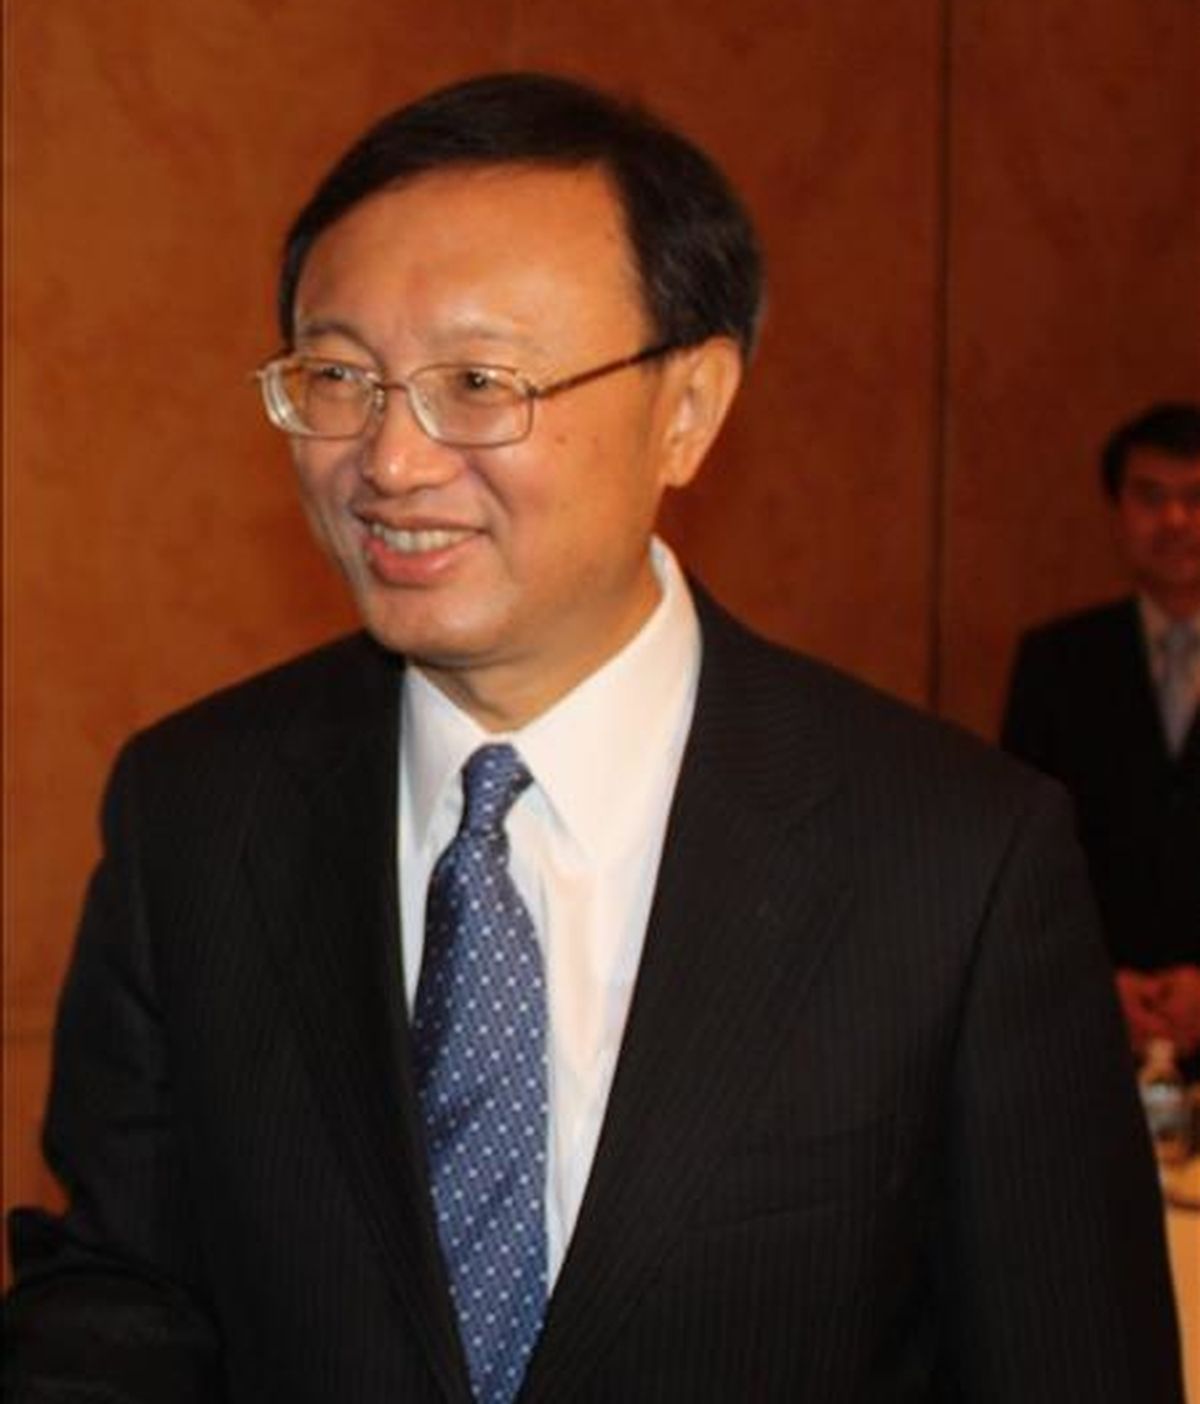 El ministro de Relaciones Exteriores de China, Yang Jiechi. EFE/Archivo